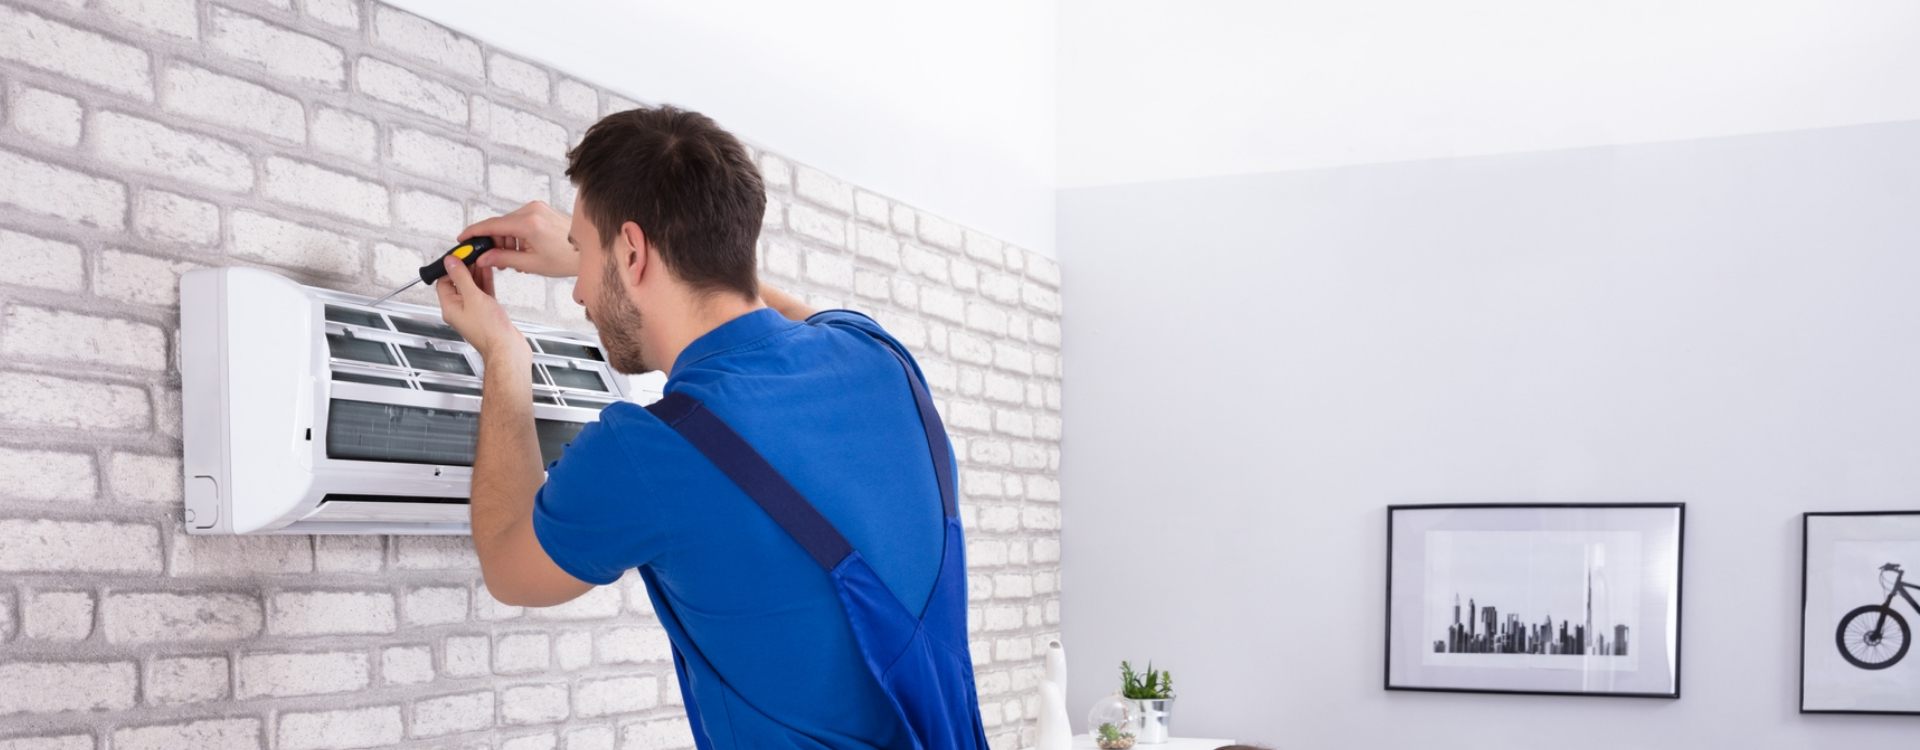 mężczyzna naprawiający klimatyzację na ścianie